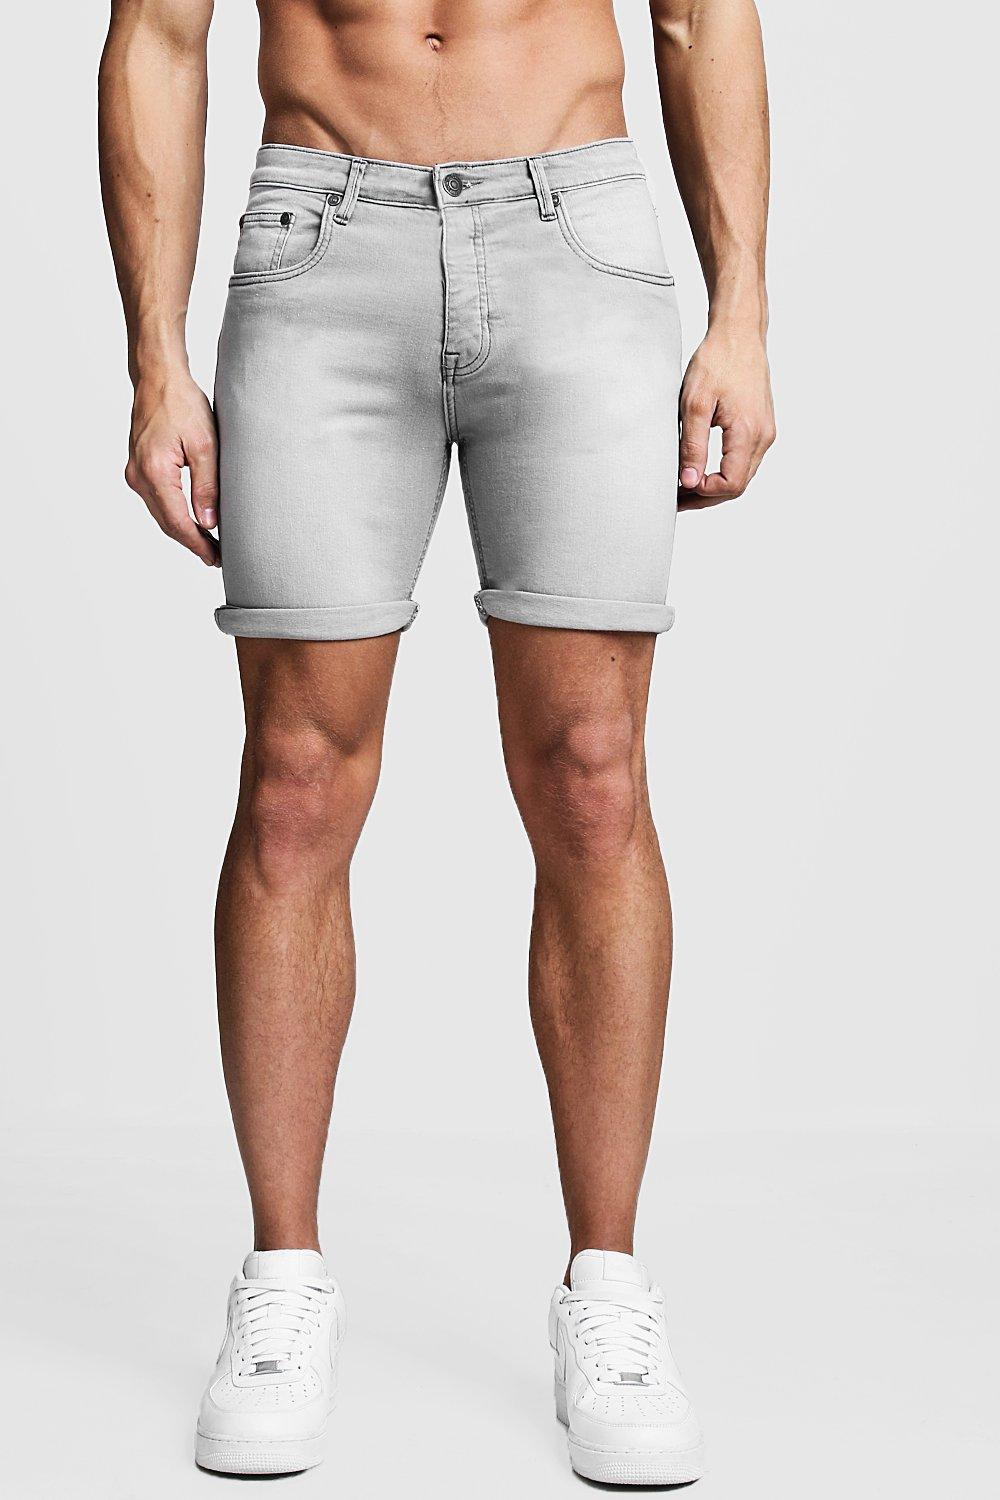 men in jean shorts